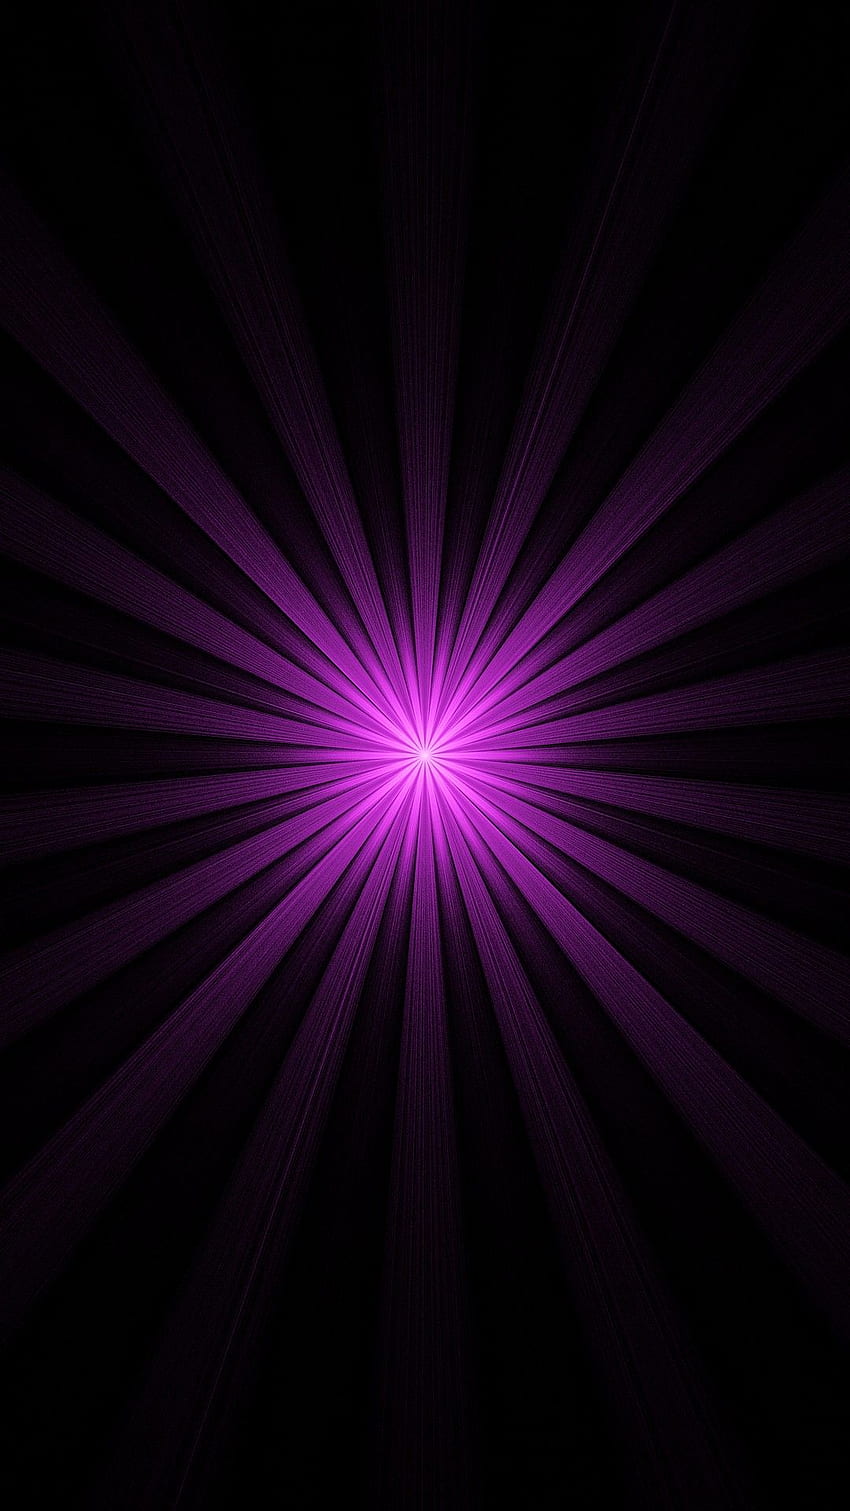 Violett, Lila, Licht, Technologie, Magenta, Beleuchtung mit visuellen Effekten im Jahr 2021. Dunkelviolett, Cool für Telefone, Lila HD-Handy-Hintergrundbild